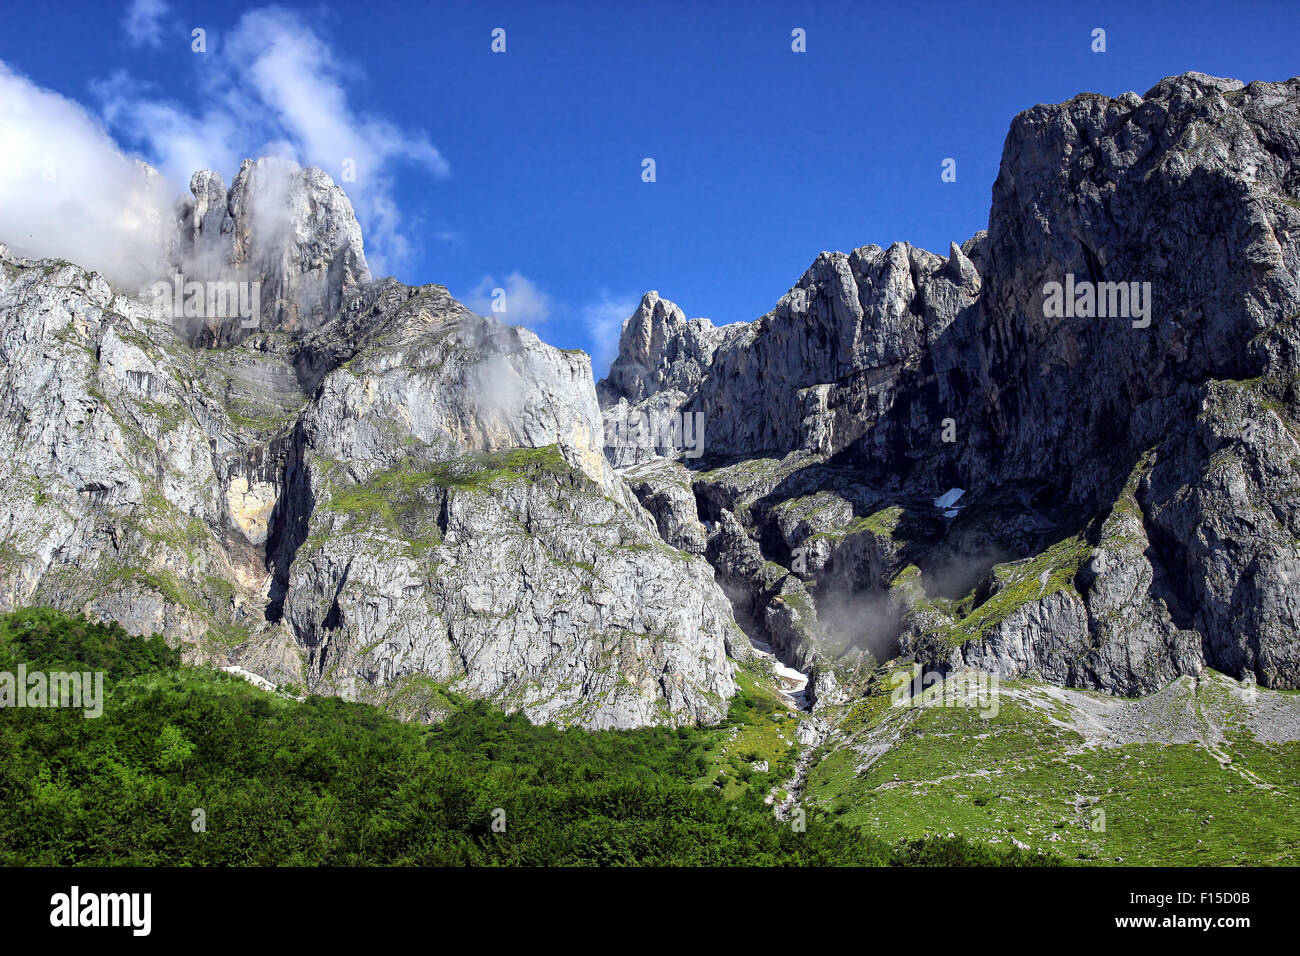 Les sommets des montagnes alpines de Picos de Europa, les monts Cantabriques, en Espagne. Banque D'Images